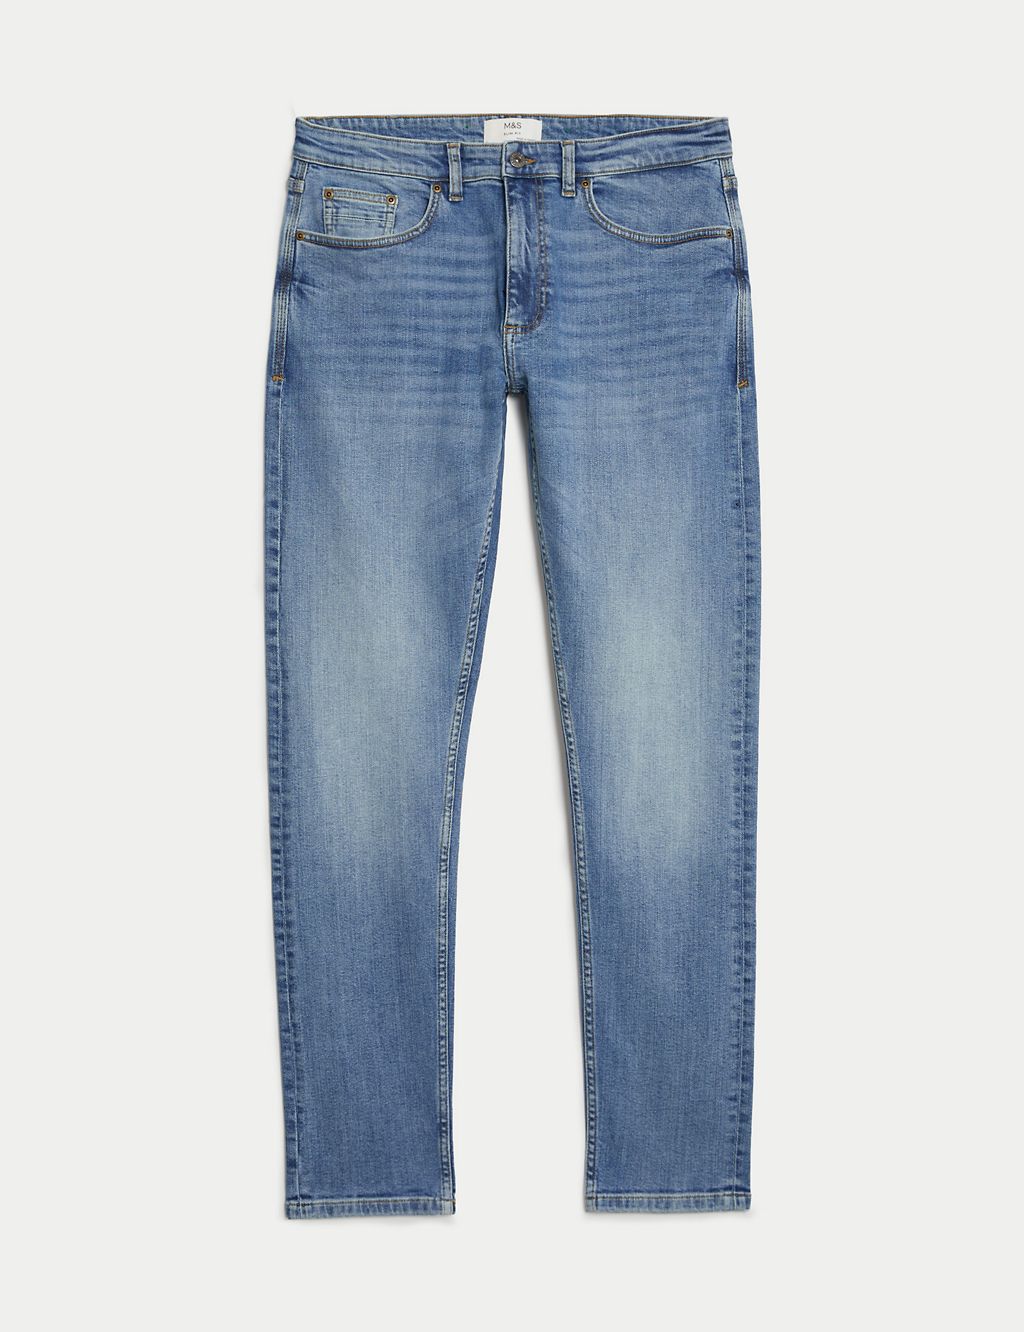 Slim Fit Vintage Wash Stretch Jeans 1 of 6